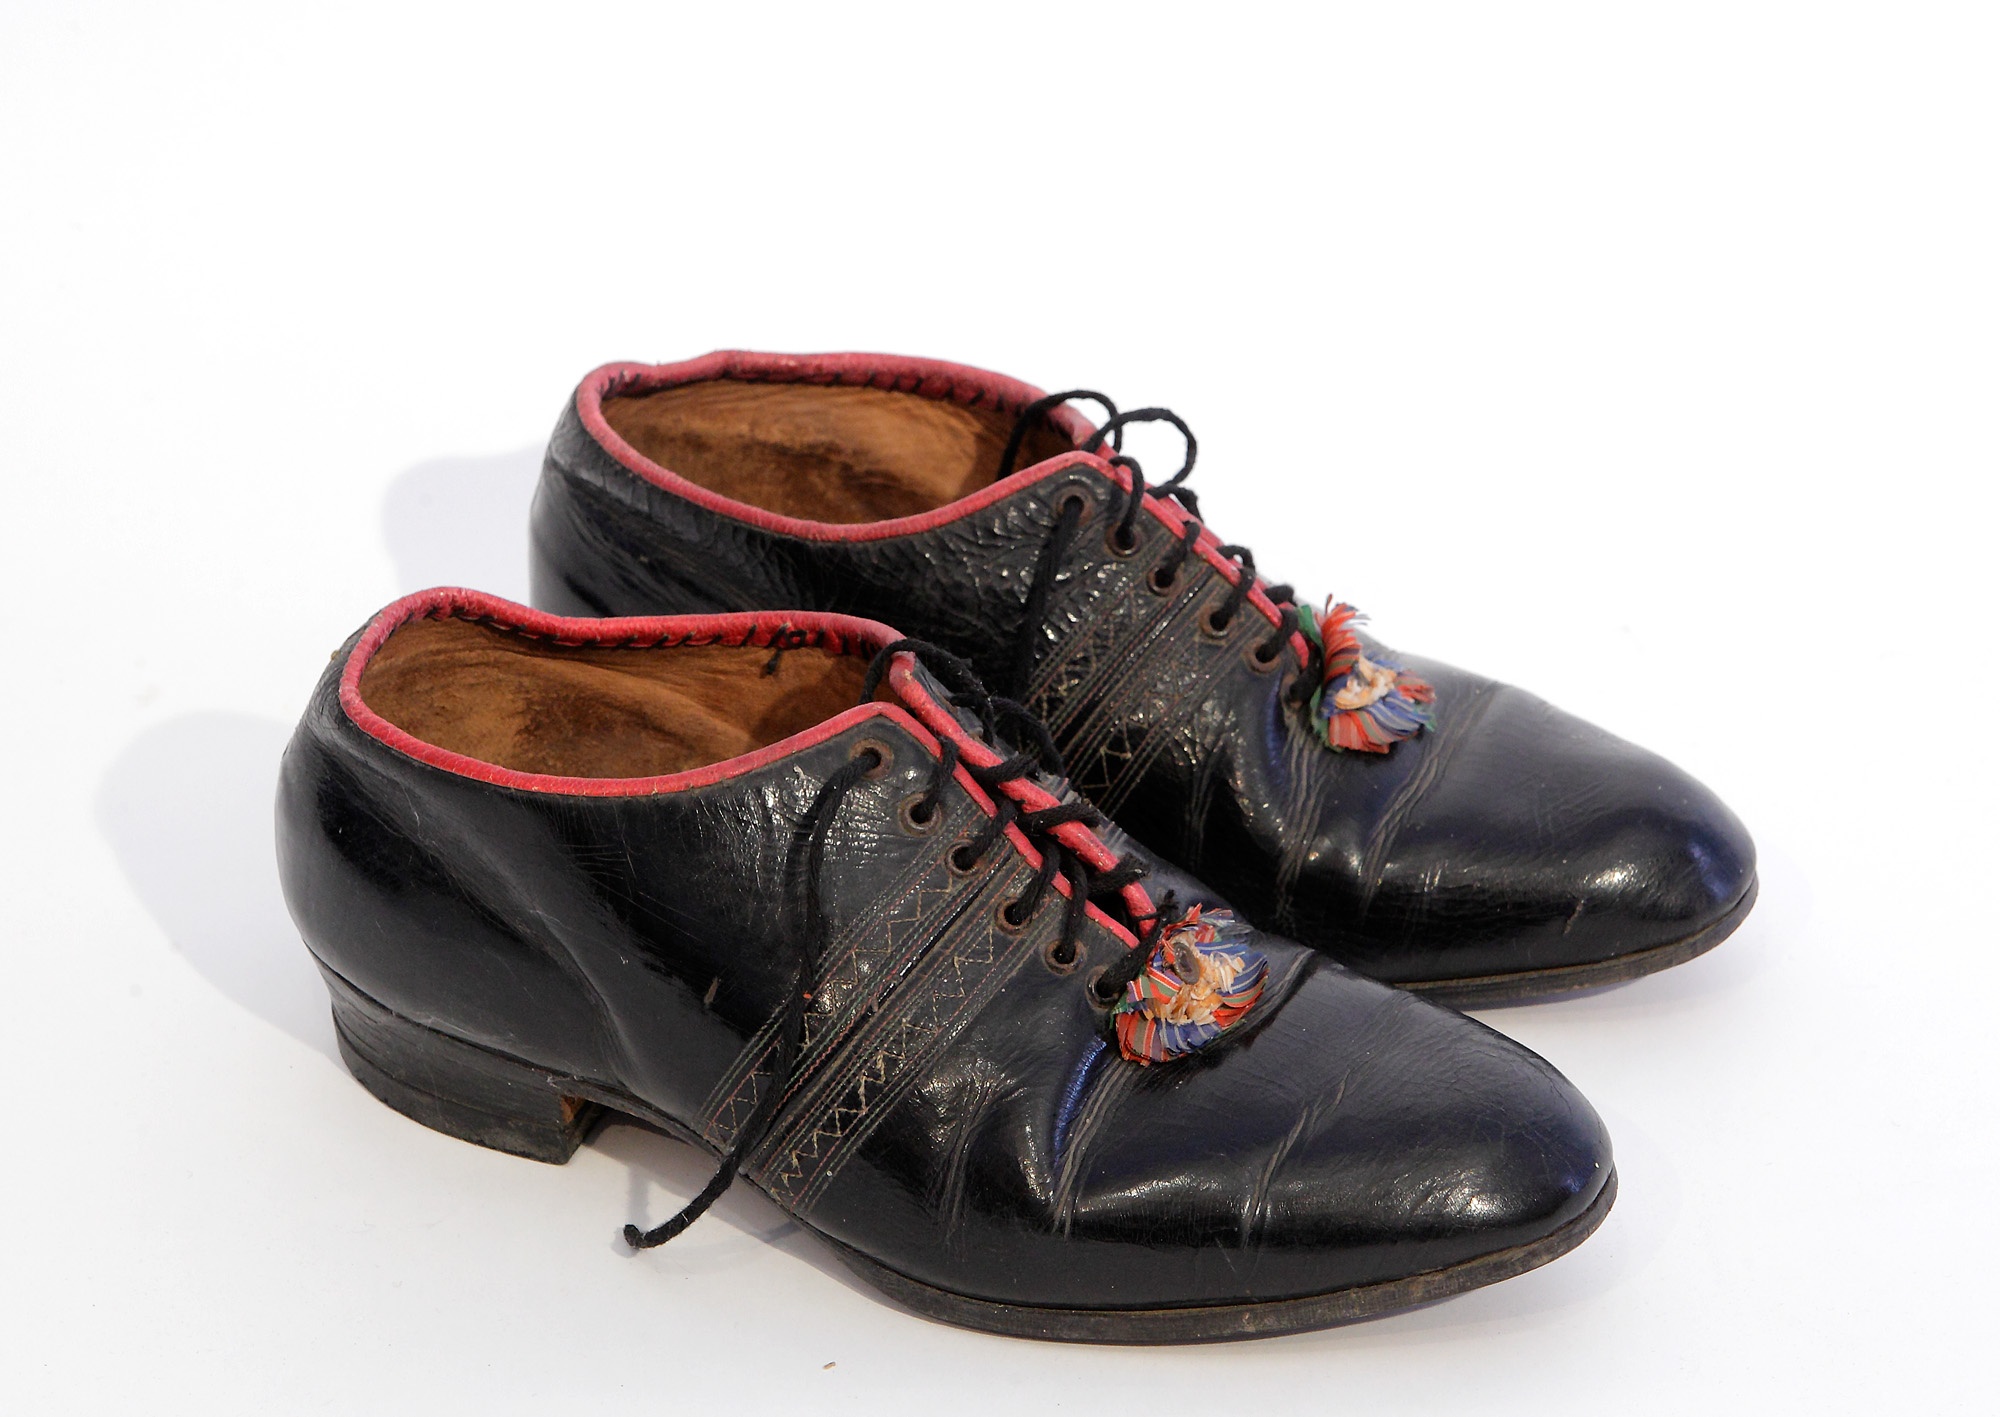 Jobblábas női cipő  /  Praud Sueh (Ceglédberceli Falumúzeum CC BY-NC-SA)